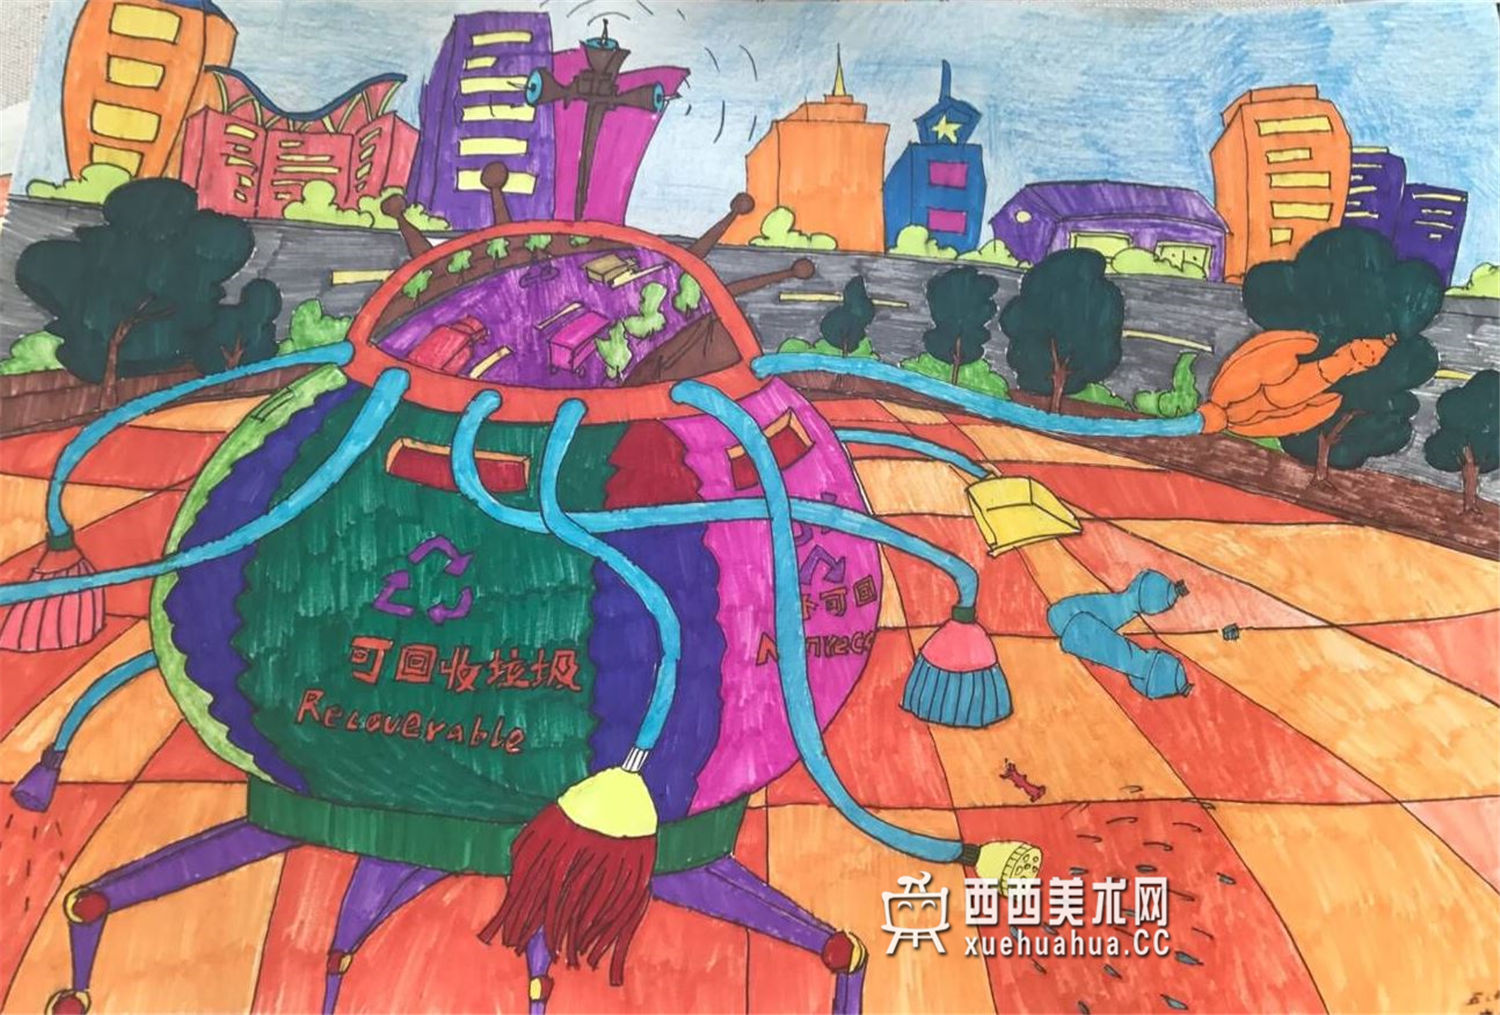 三等奖小学生环保获奖科幻画《 神奇垃圾转换器》(1)